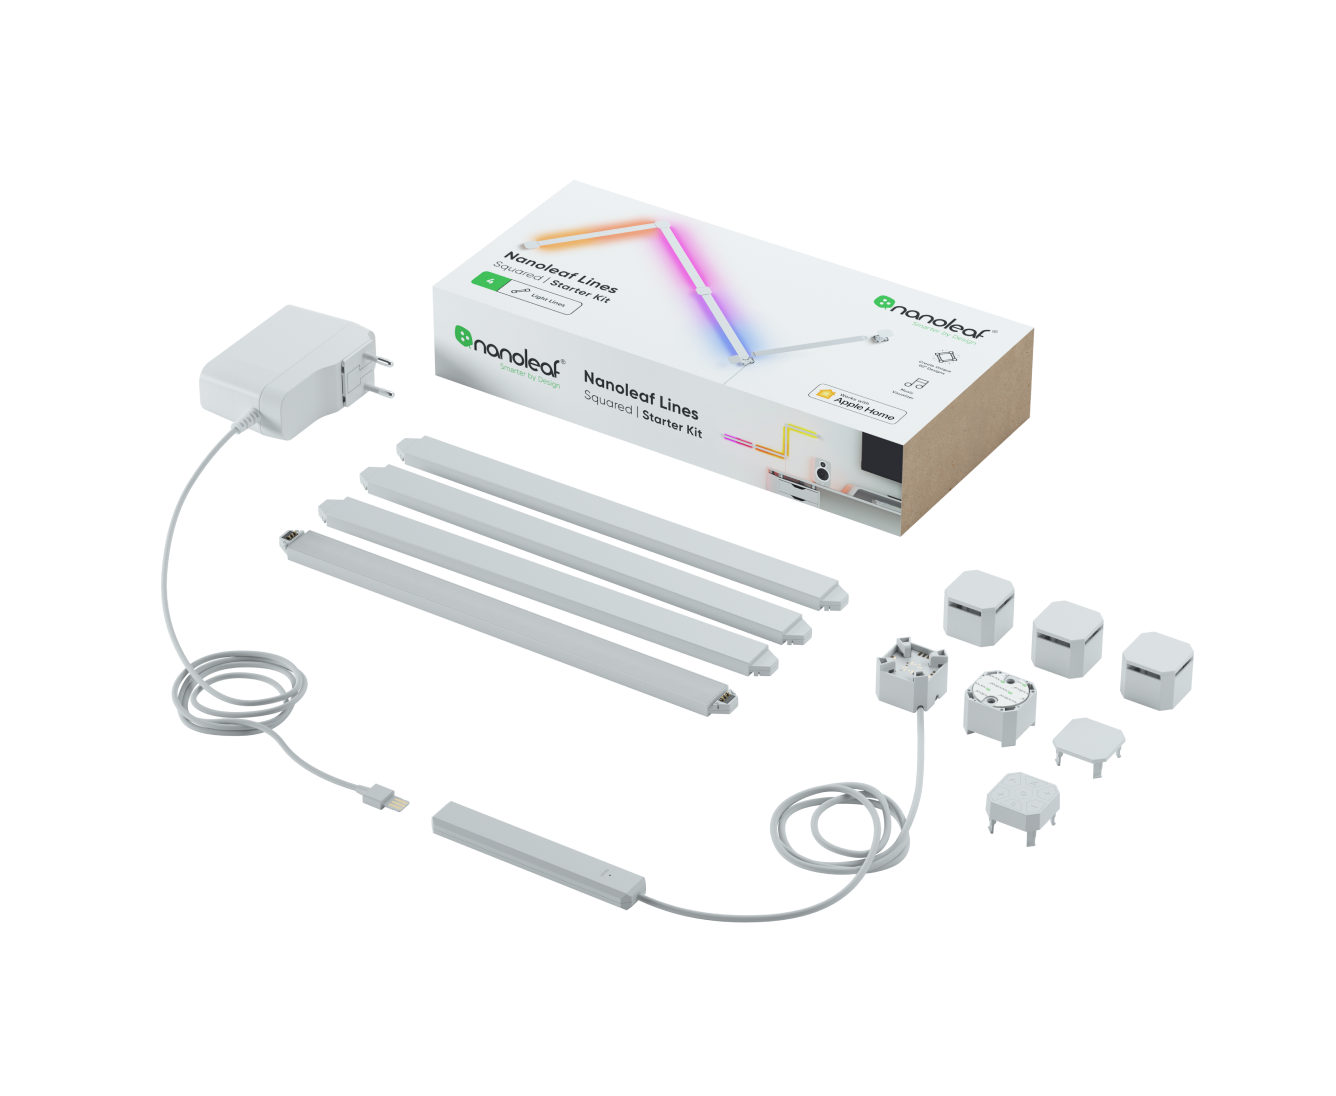 Microstor - Elle est de retour ! L'ampoule connectée L3 VOCOlinc compatible  Homekit et Google Assistant. 🤩 +𝟭𝟲 𝗠𝗶𝗹𝗹𝗶𝗼𝗻𝘀 𝗱𝗲  𝗰𝗼𝘂𝗹𝗲𝘂𝗿𝘀 : Personnalisez l'environnement et l'ambiance pour chaque  occasion en jouant avec